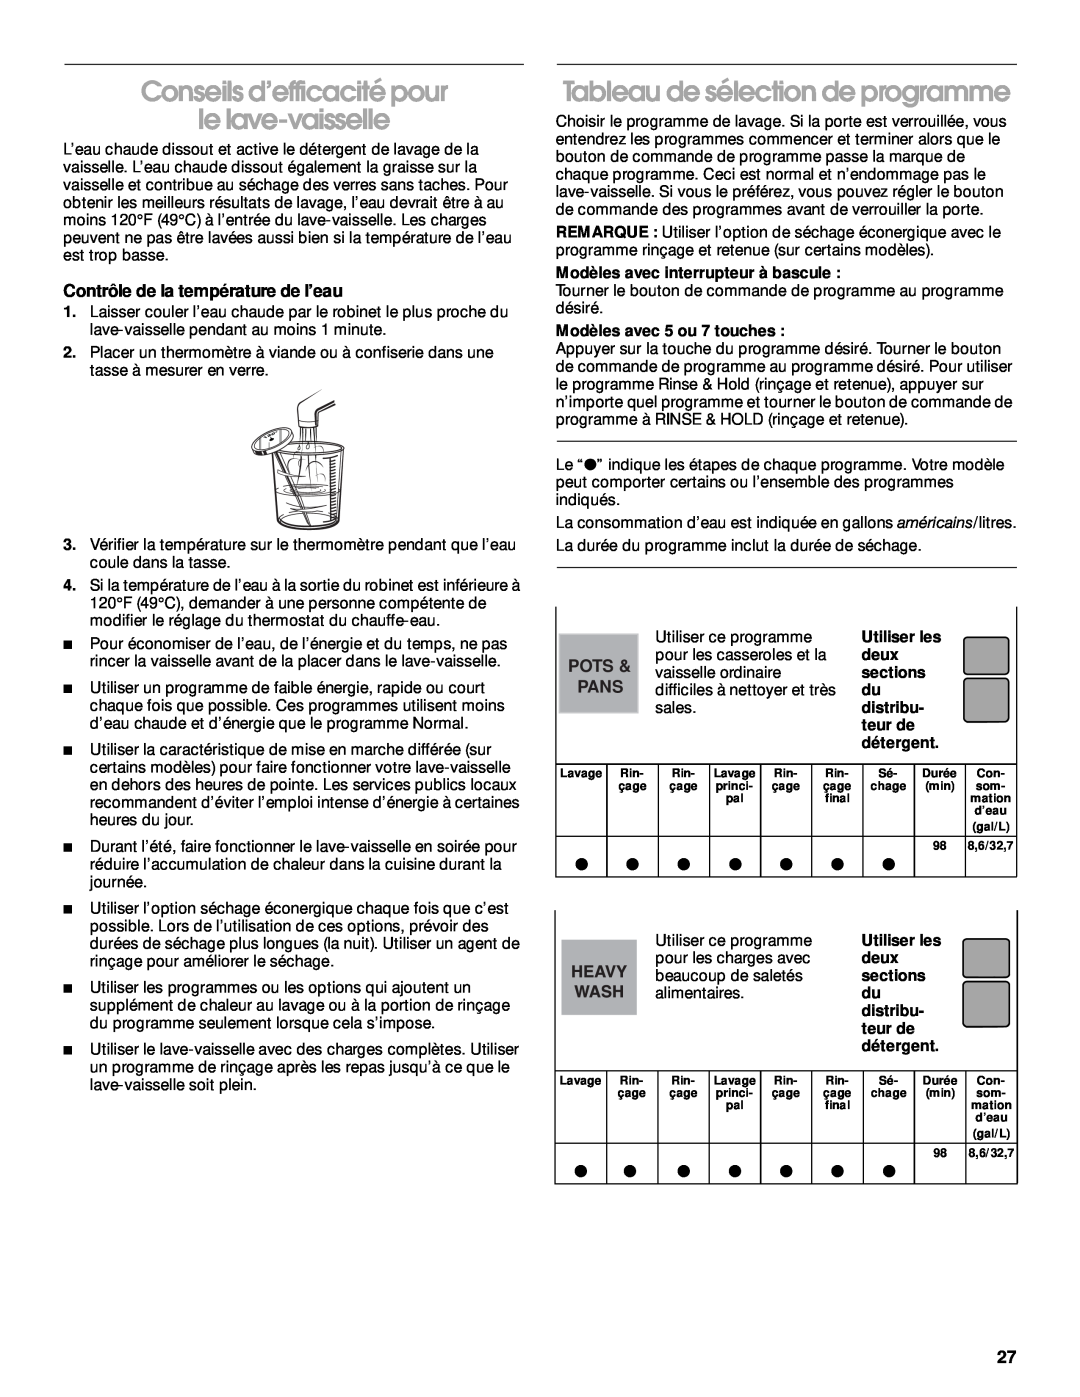 Roper 119 Conseils d’efficacité pour le lave-vaisselle, Tableau de sélection de programme, Modèles avec 5 ou 7 touches 